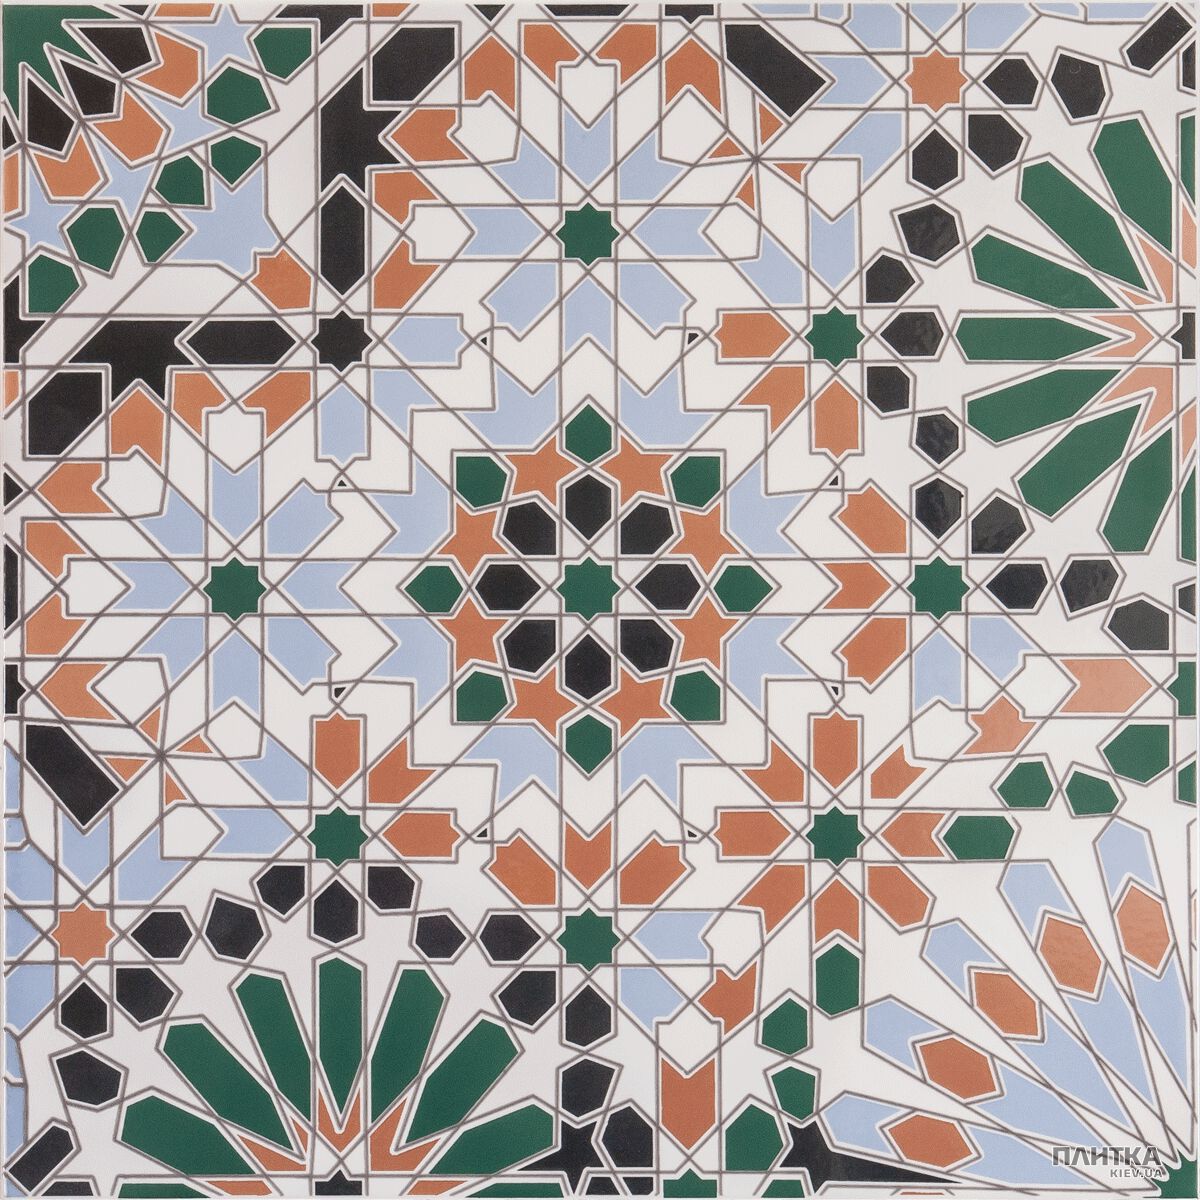 Плитка Venus Marrakech MARRAKECH DECORE белый,бежевый,зеленый,оранжевый,черный,синий